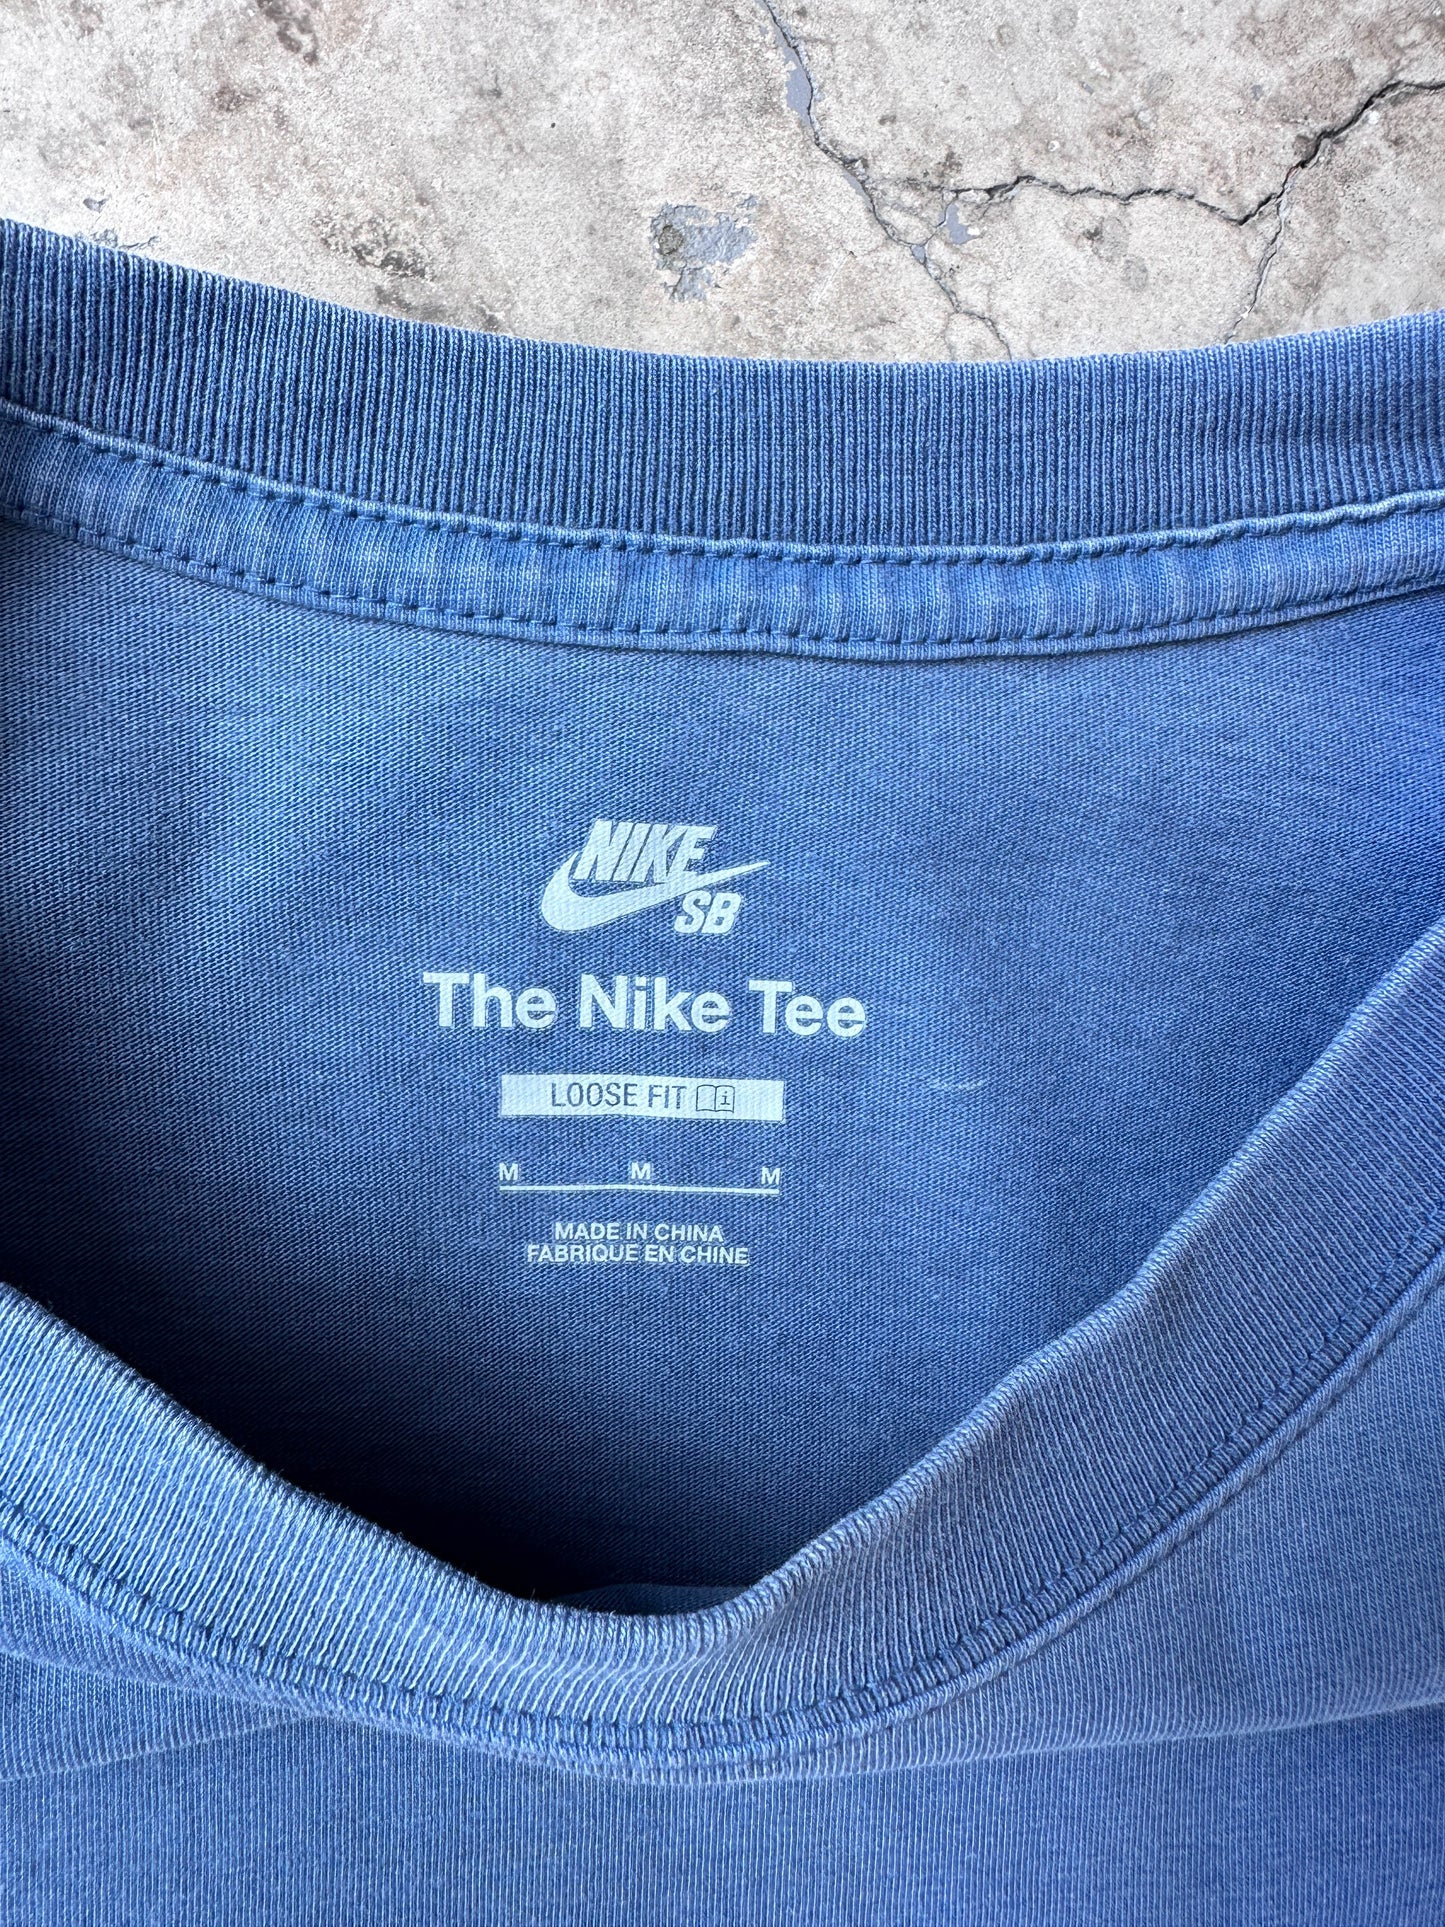 Camiseta Nike vintage